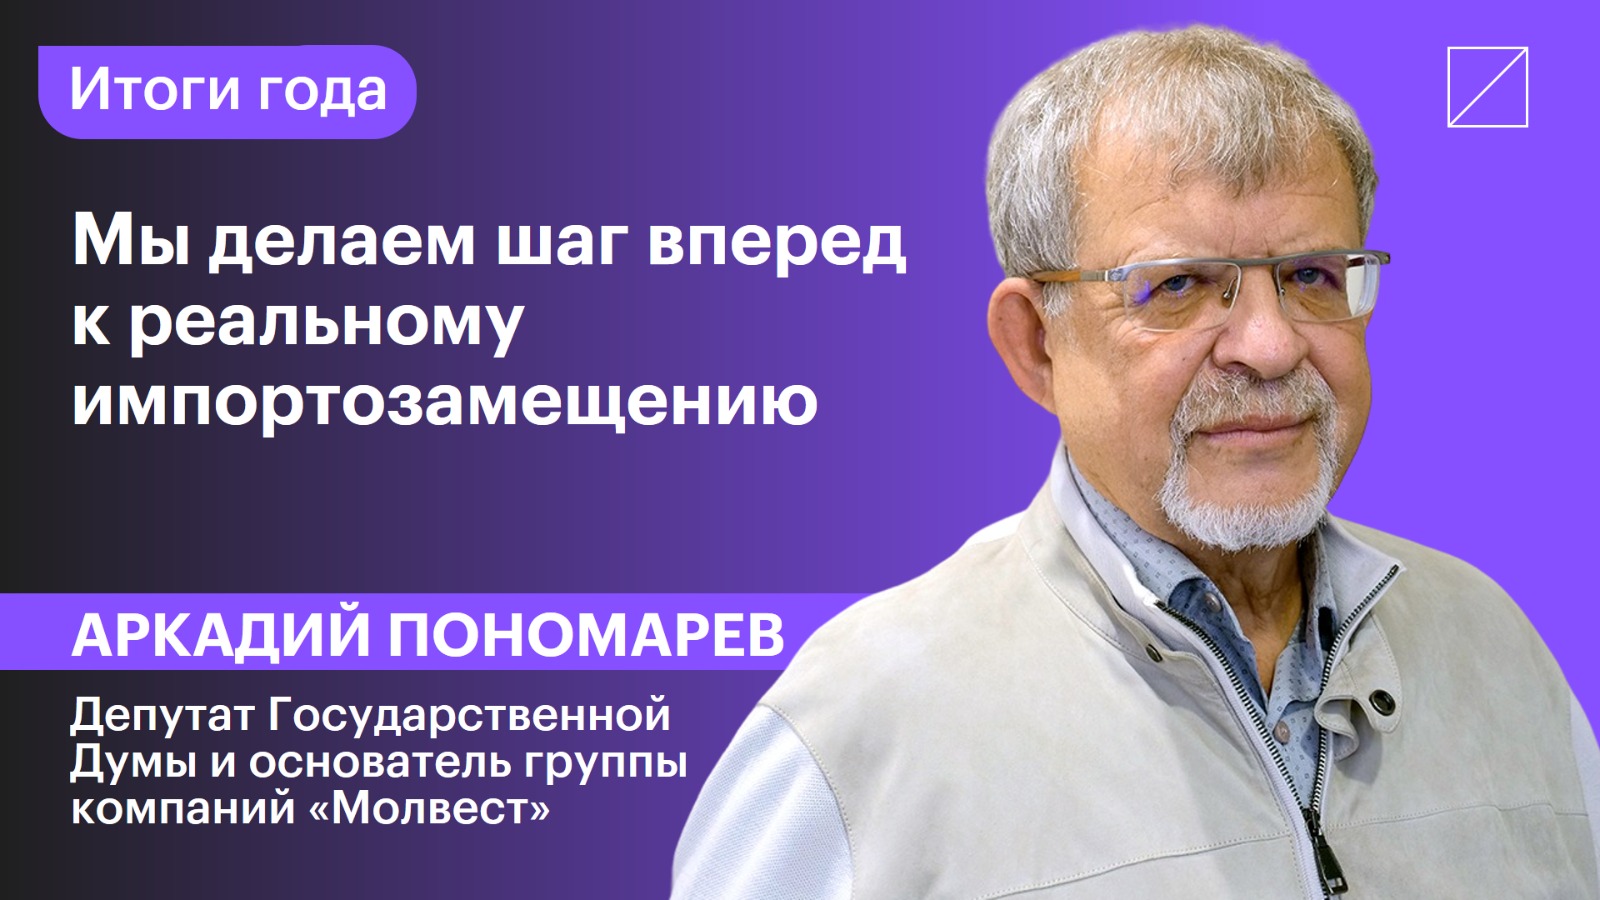 Аркадий Пономарев: «Мы делаем шаг вперед к реальному импортозамещению»